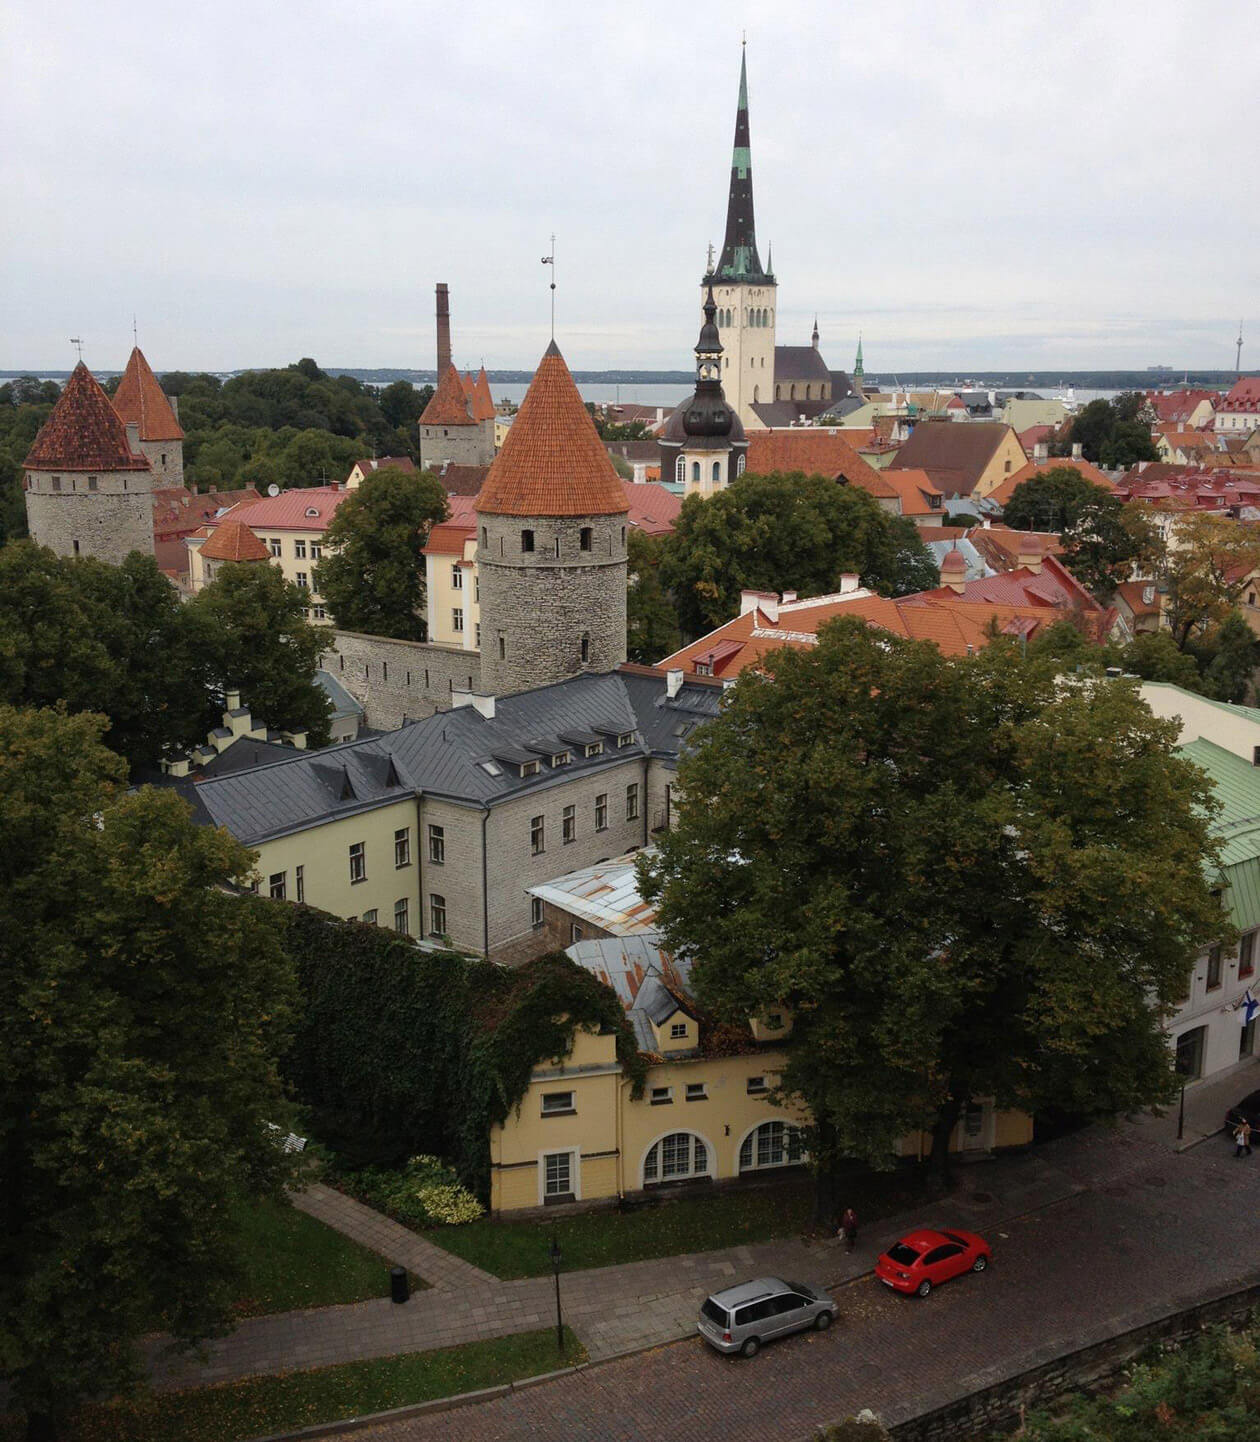 Tallinn, Estonia's lovely walled capital